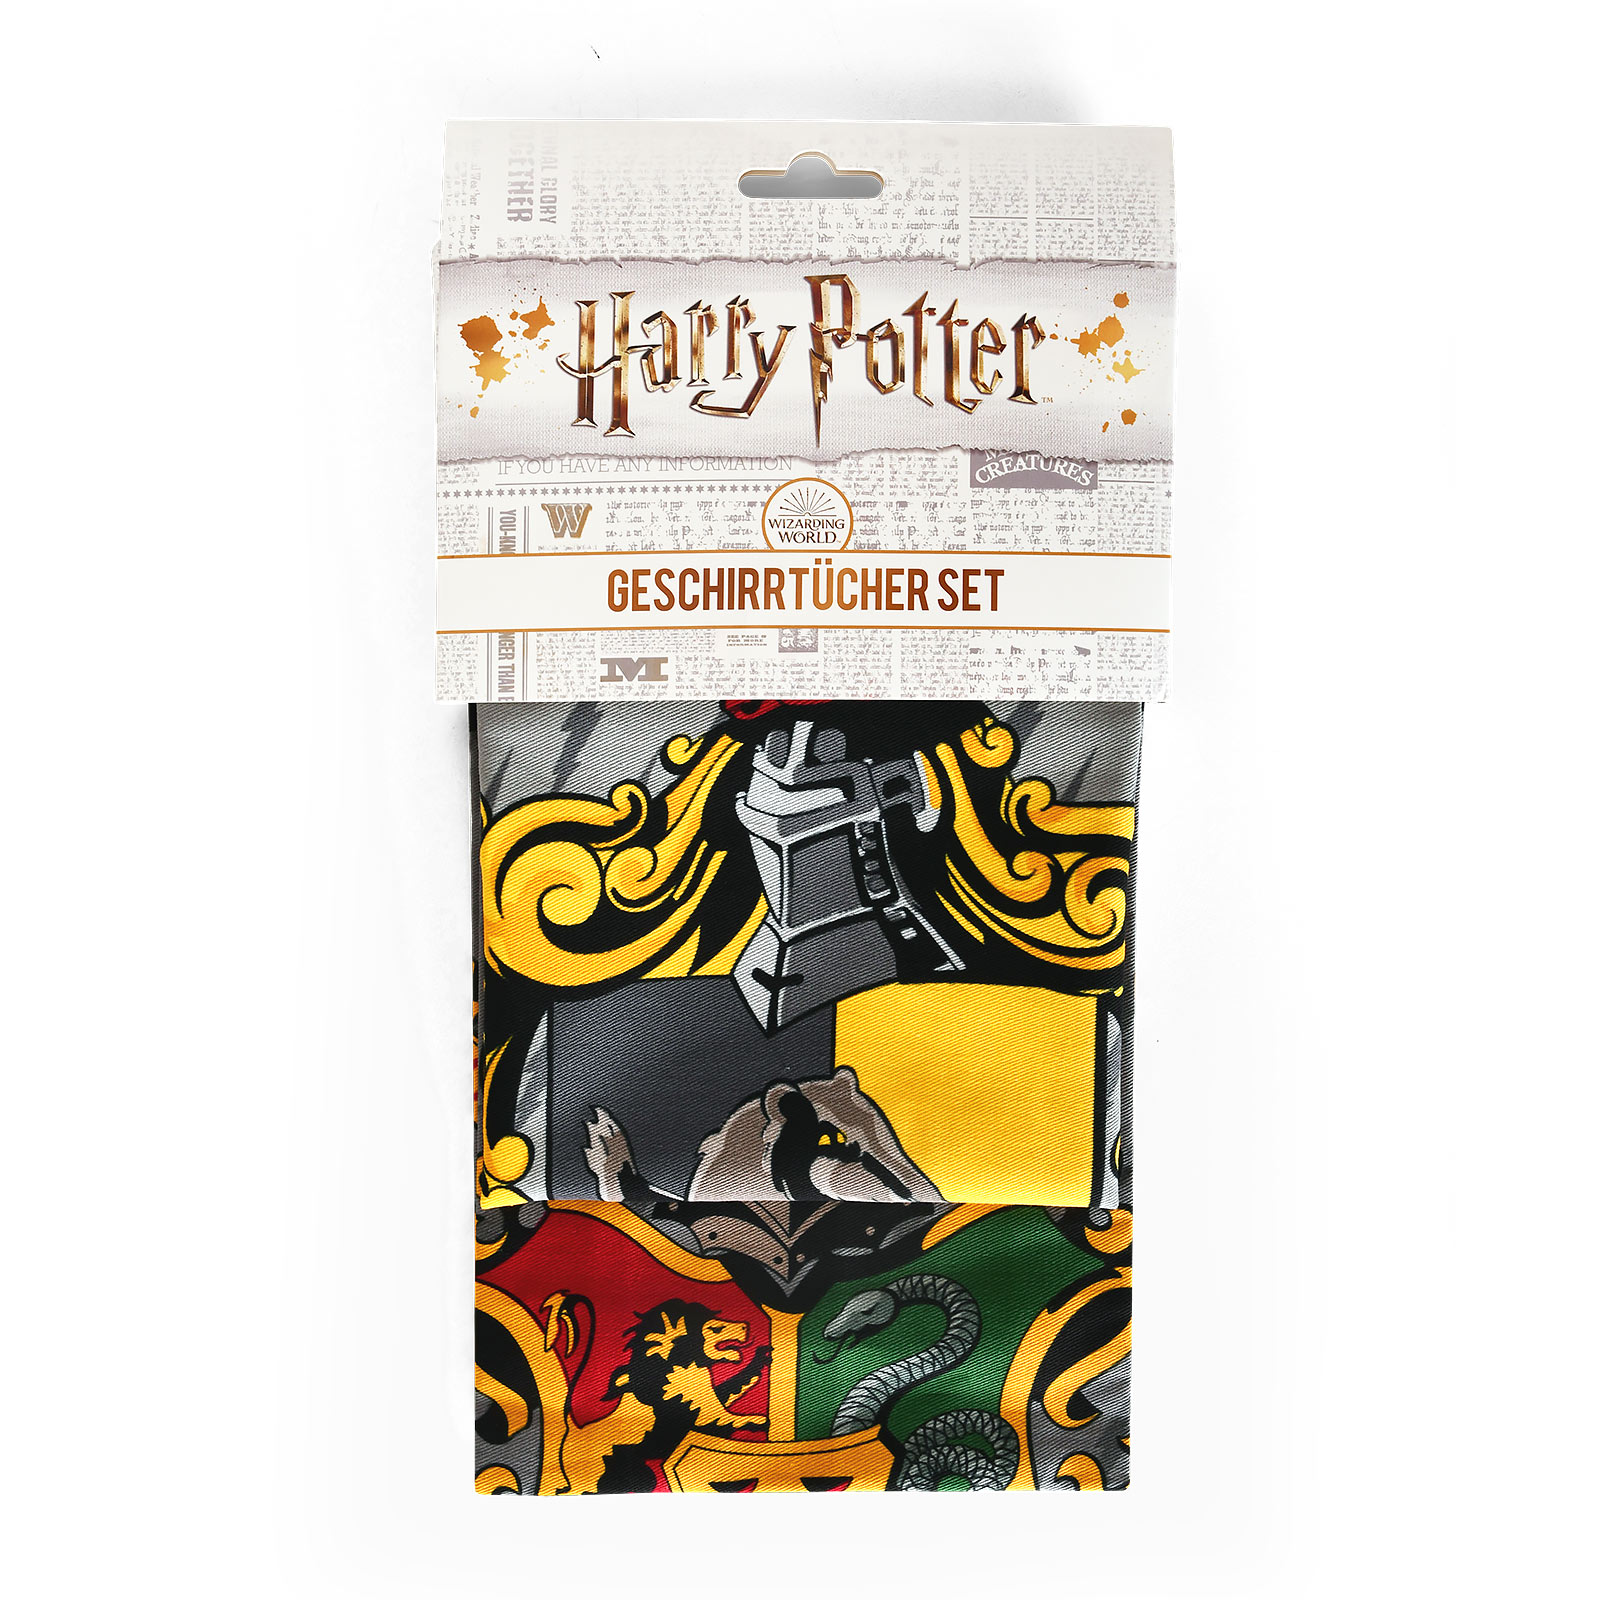 Harry Potter - Hufflepuff & Hogwarts Geschirrtücher Set